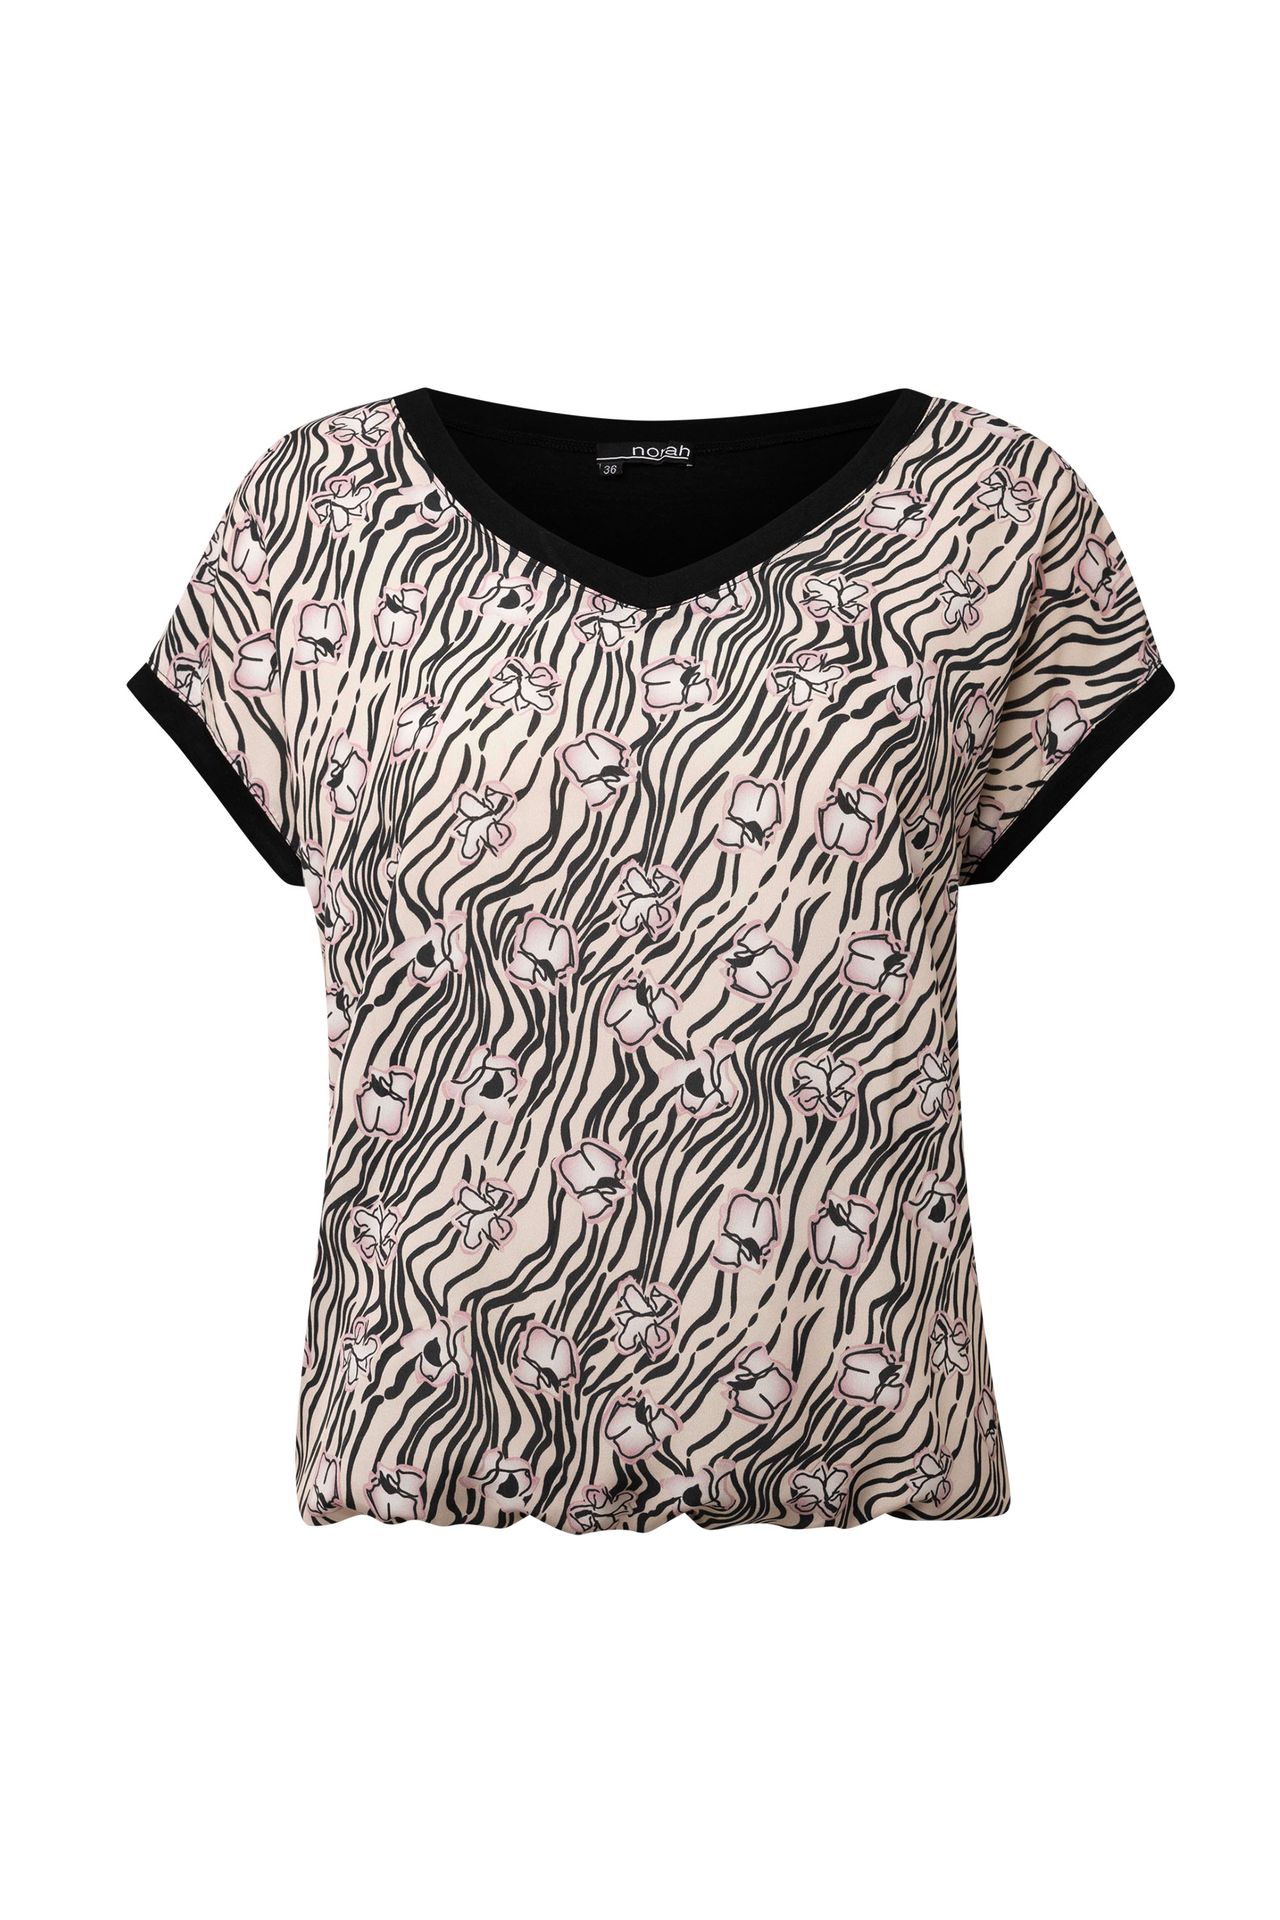 Norah Zandkleurig shirt met print sand multicolor 214162-121